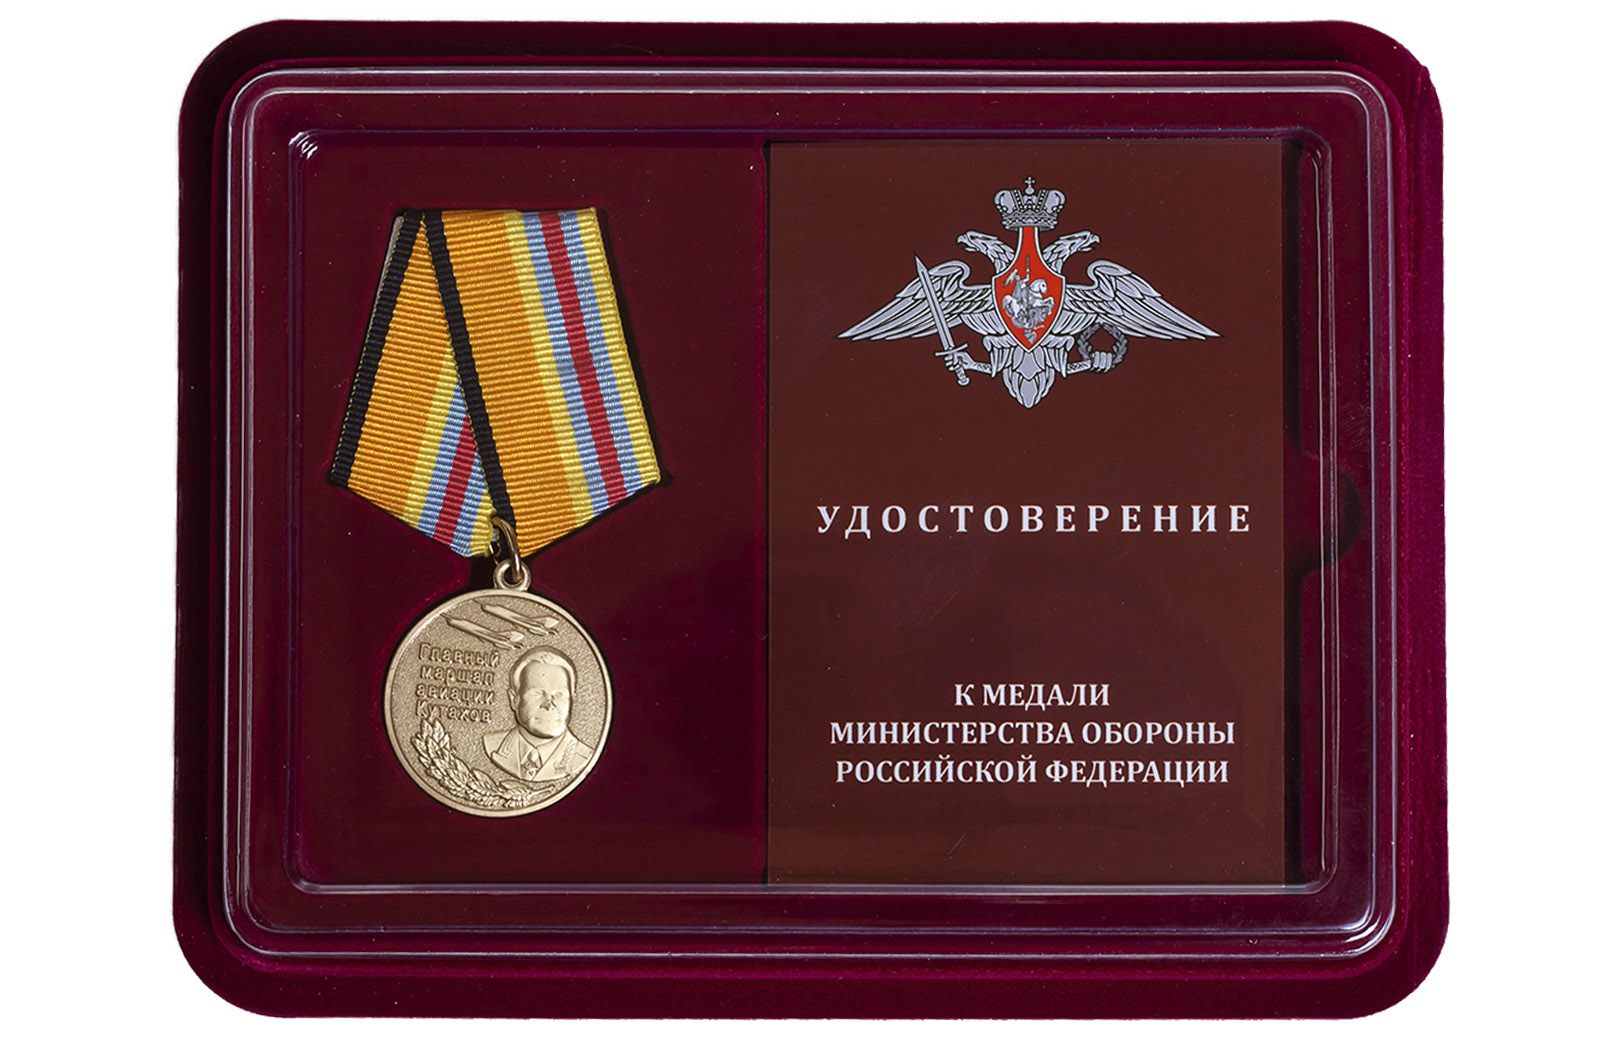 Купить медаль "Маршал Кутахов" в футляре с удостоверением с доставкой